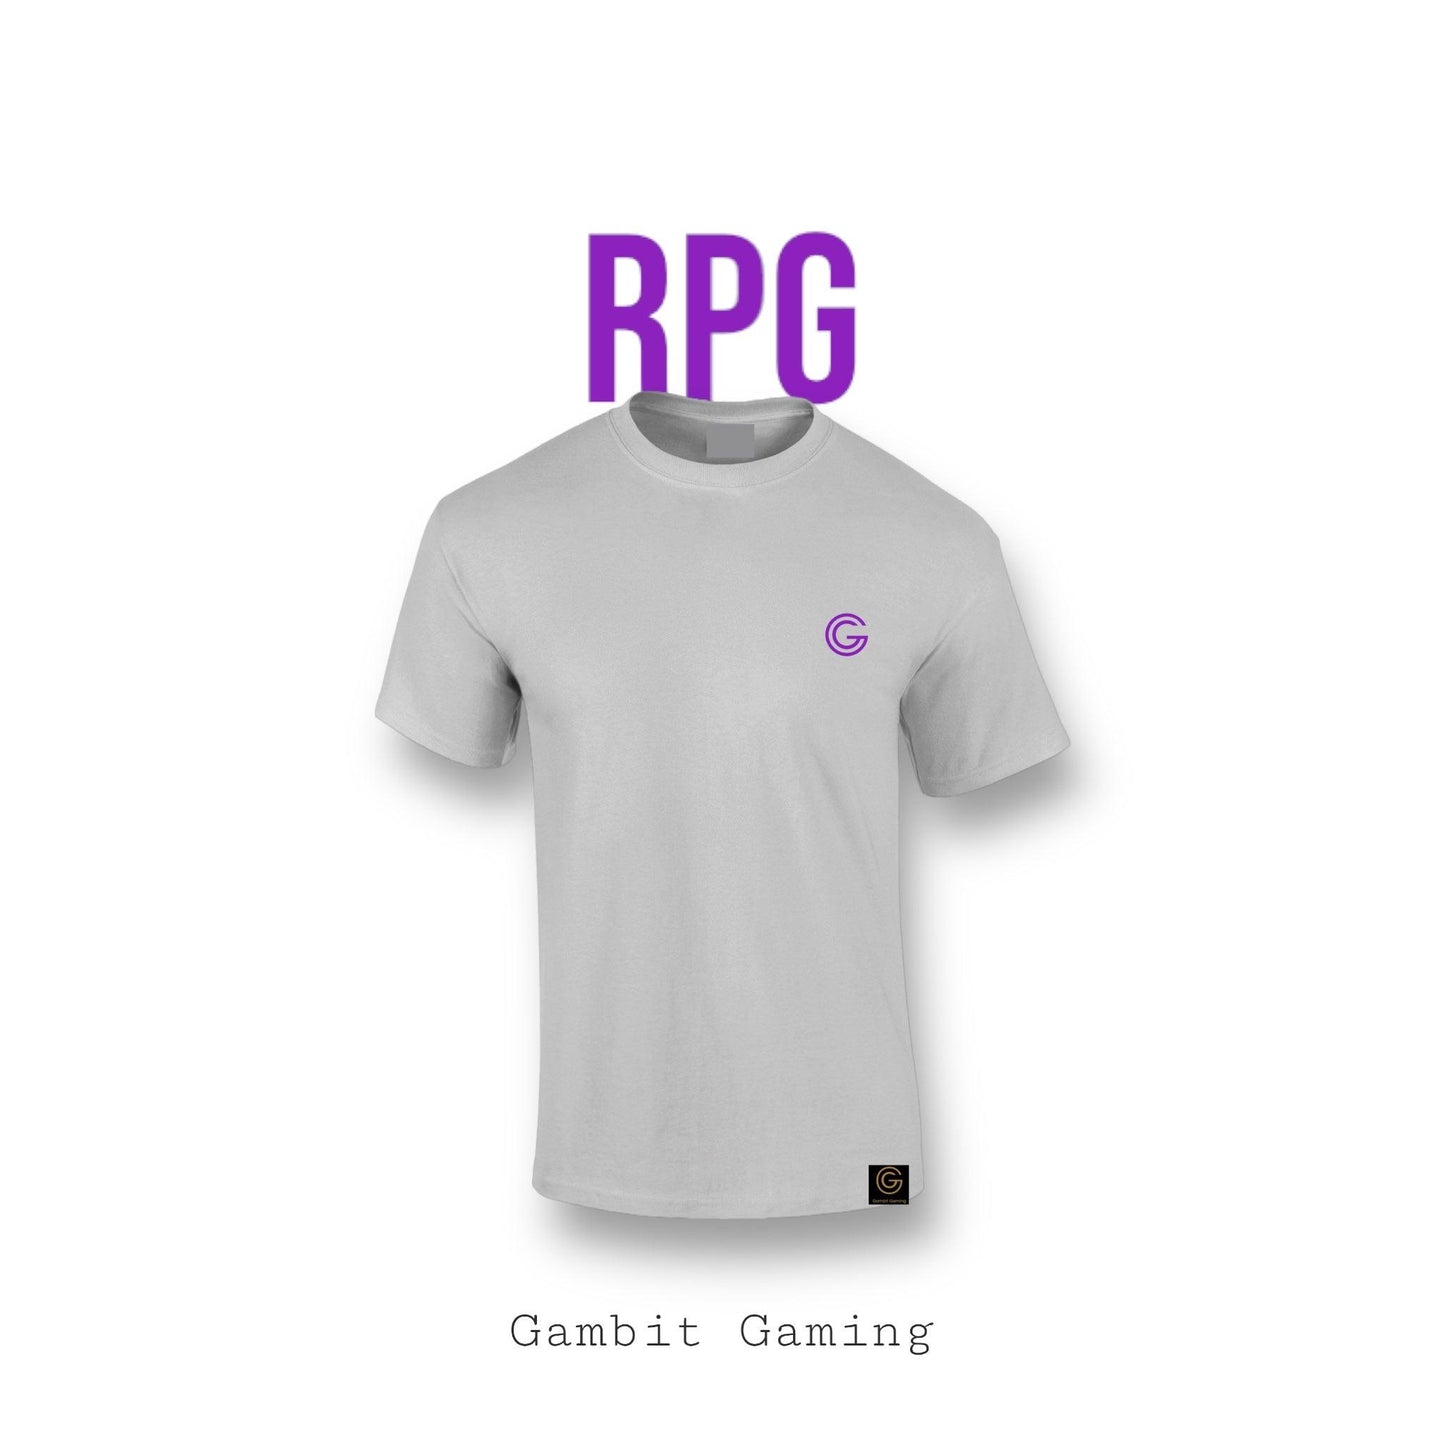 RPG T-shirt - Gambit Gaming